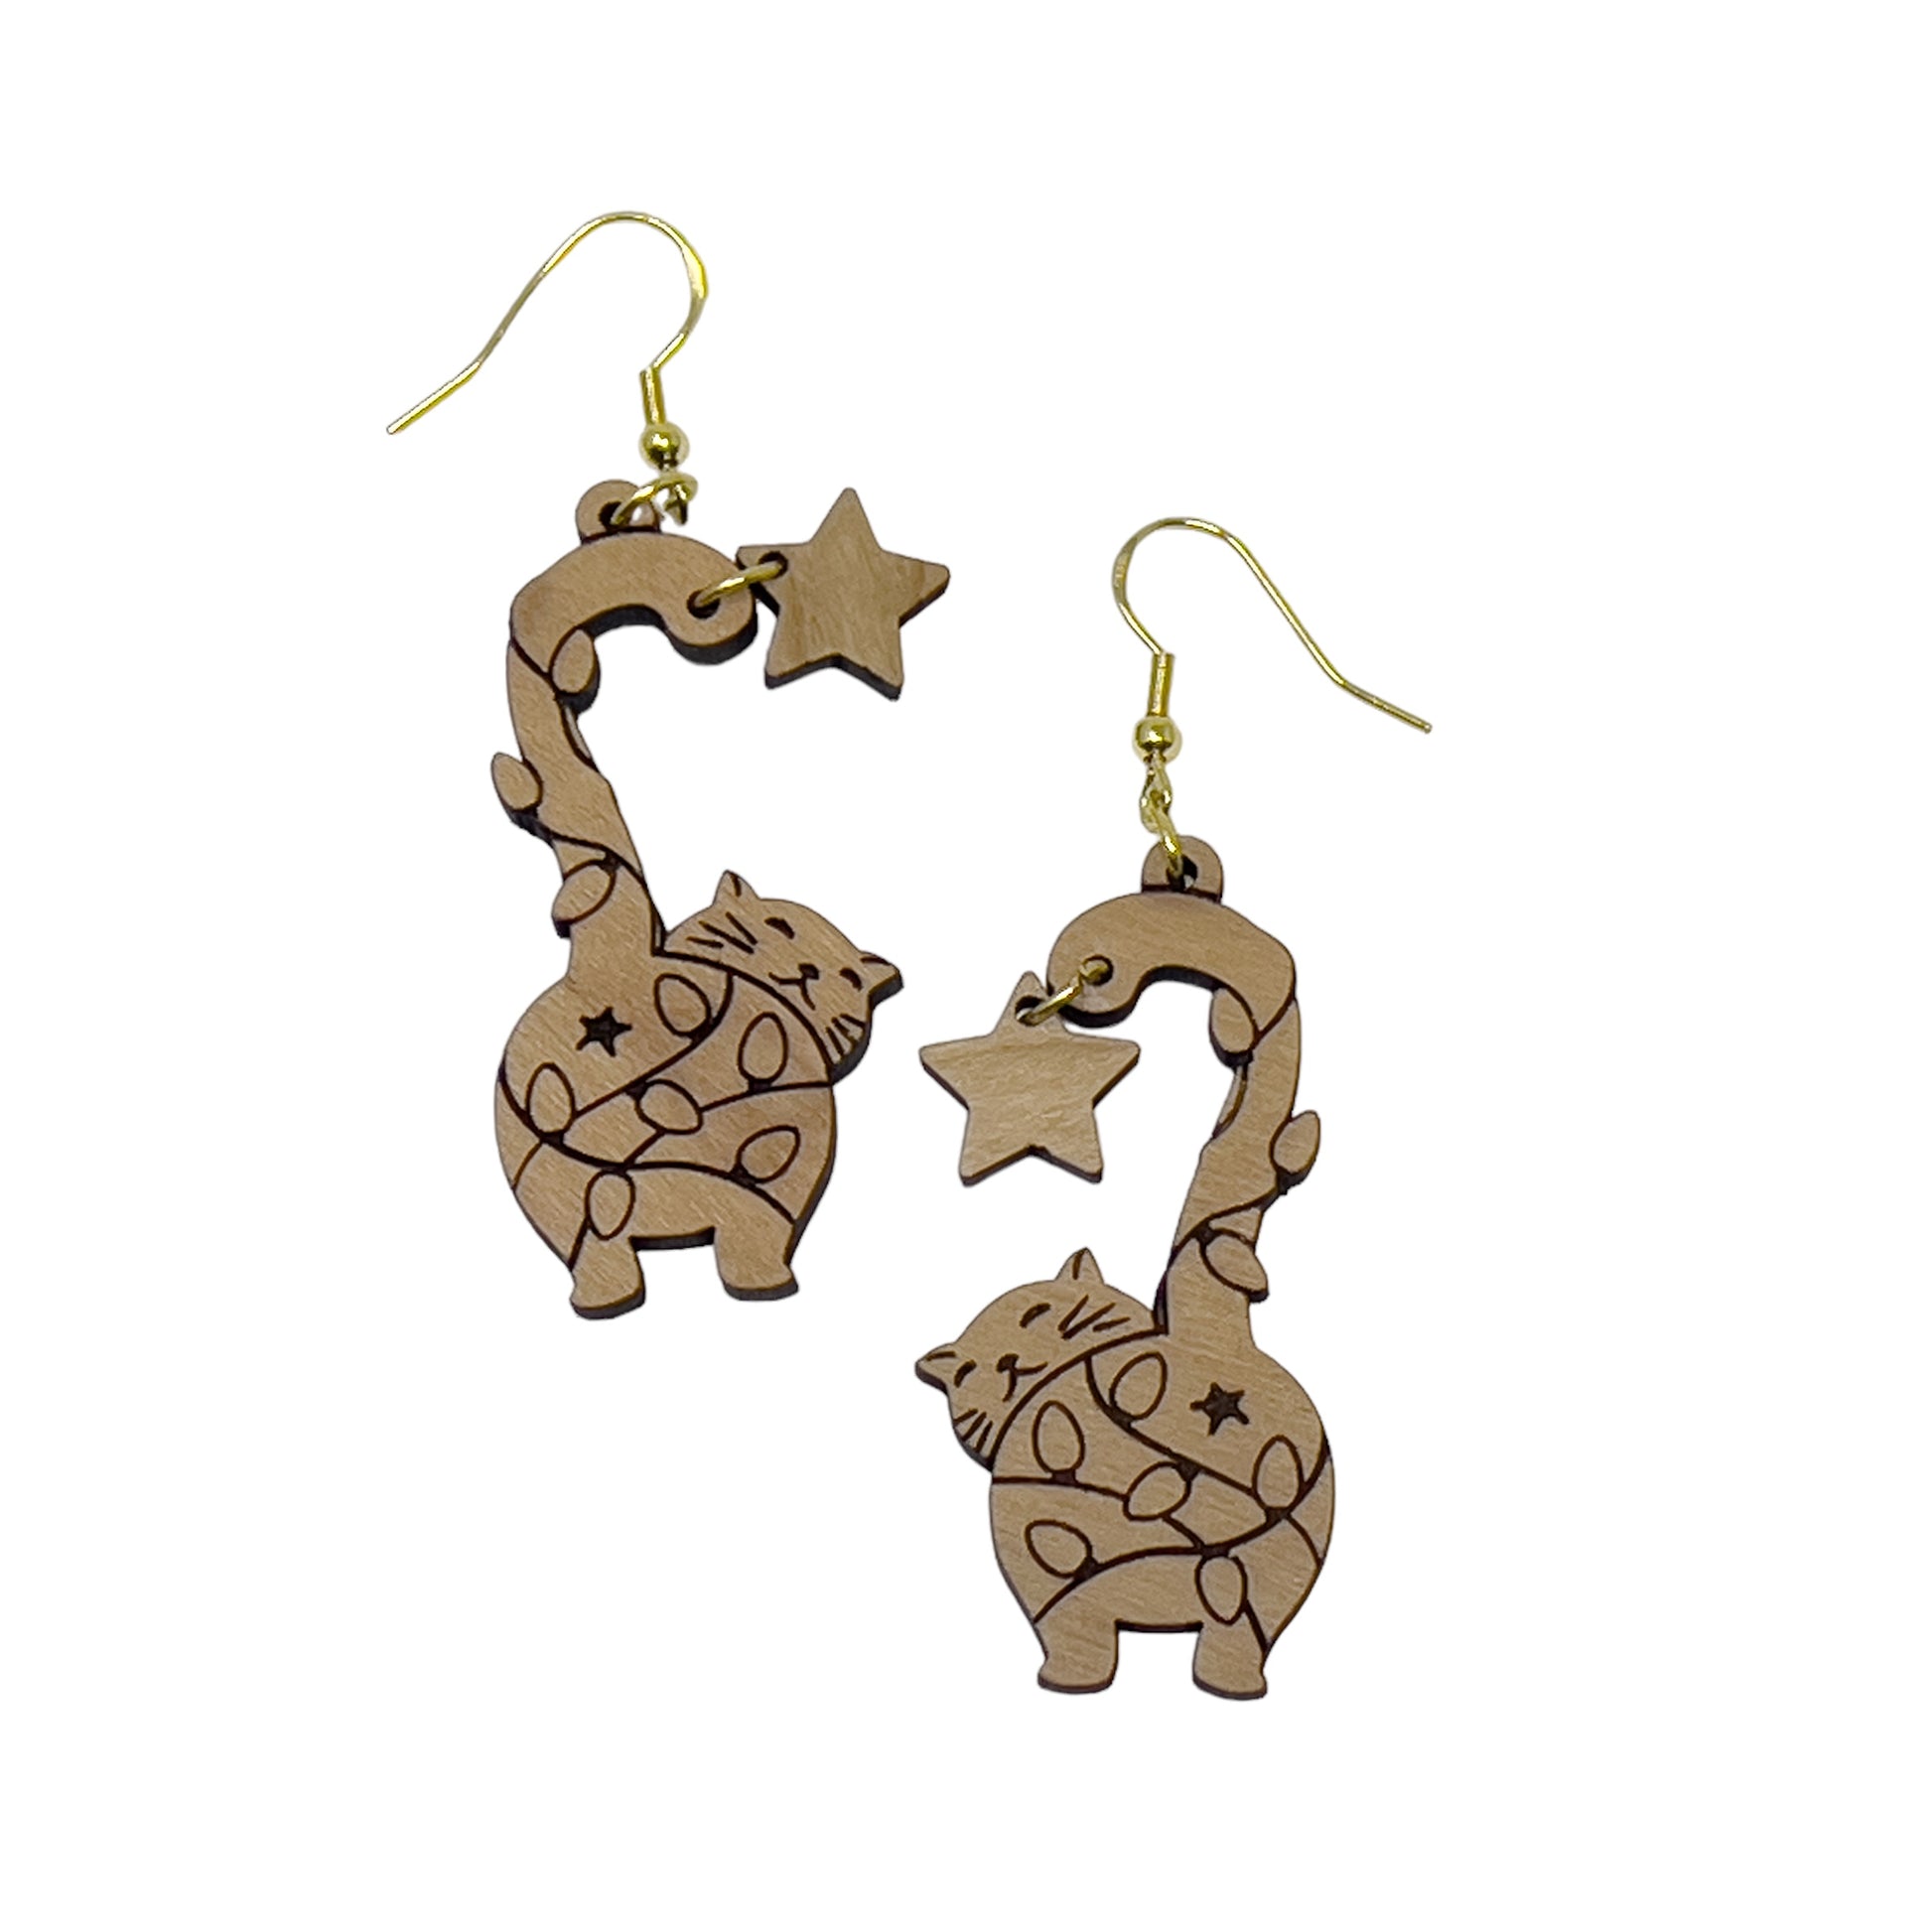 Cat Earrings, Wood Dangle Star Earrings, Cute Feline Spring Gifts for Cat Lover Girlfriend, Adorable Animal Jewelry, Womens Boho Earring Set